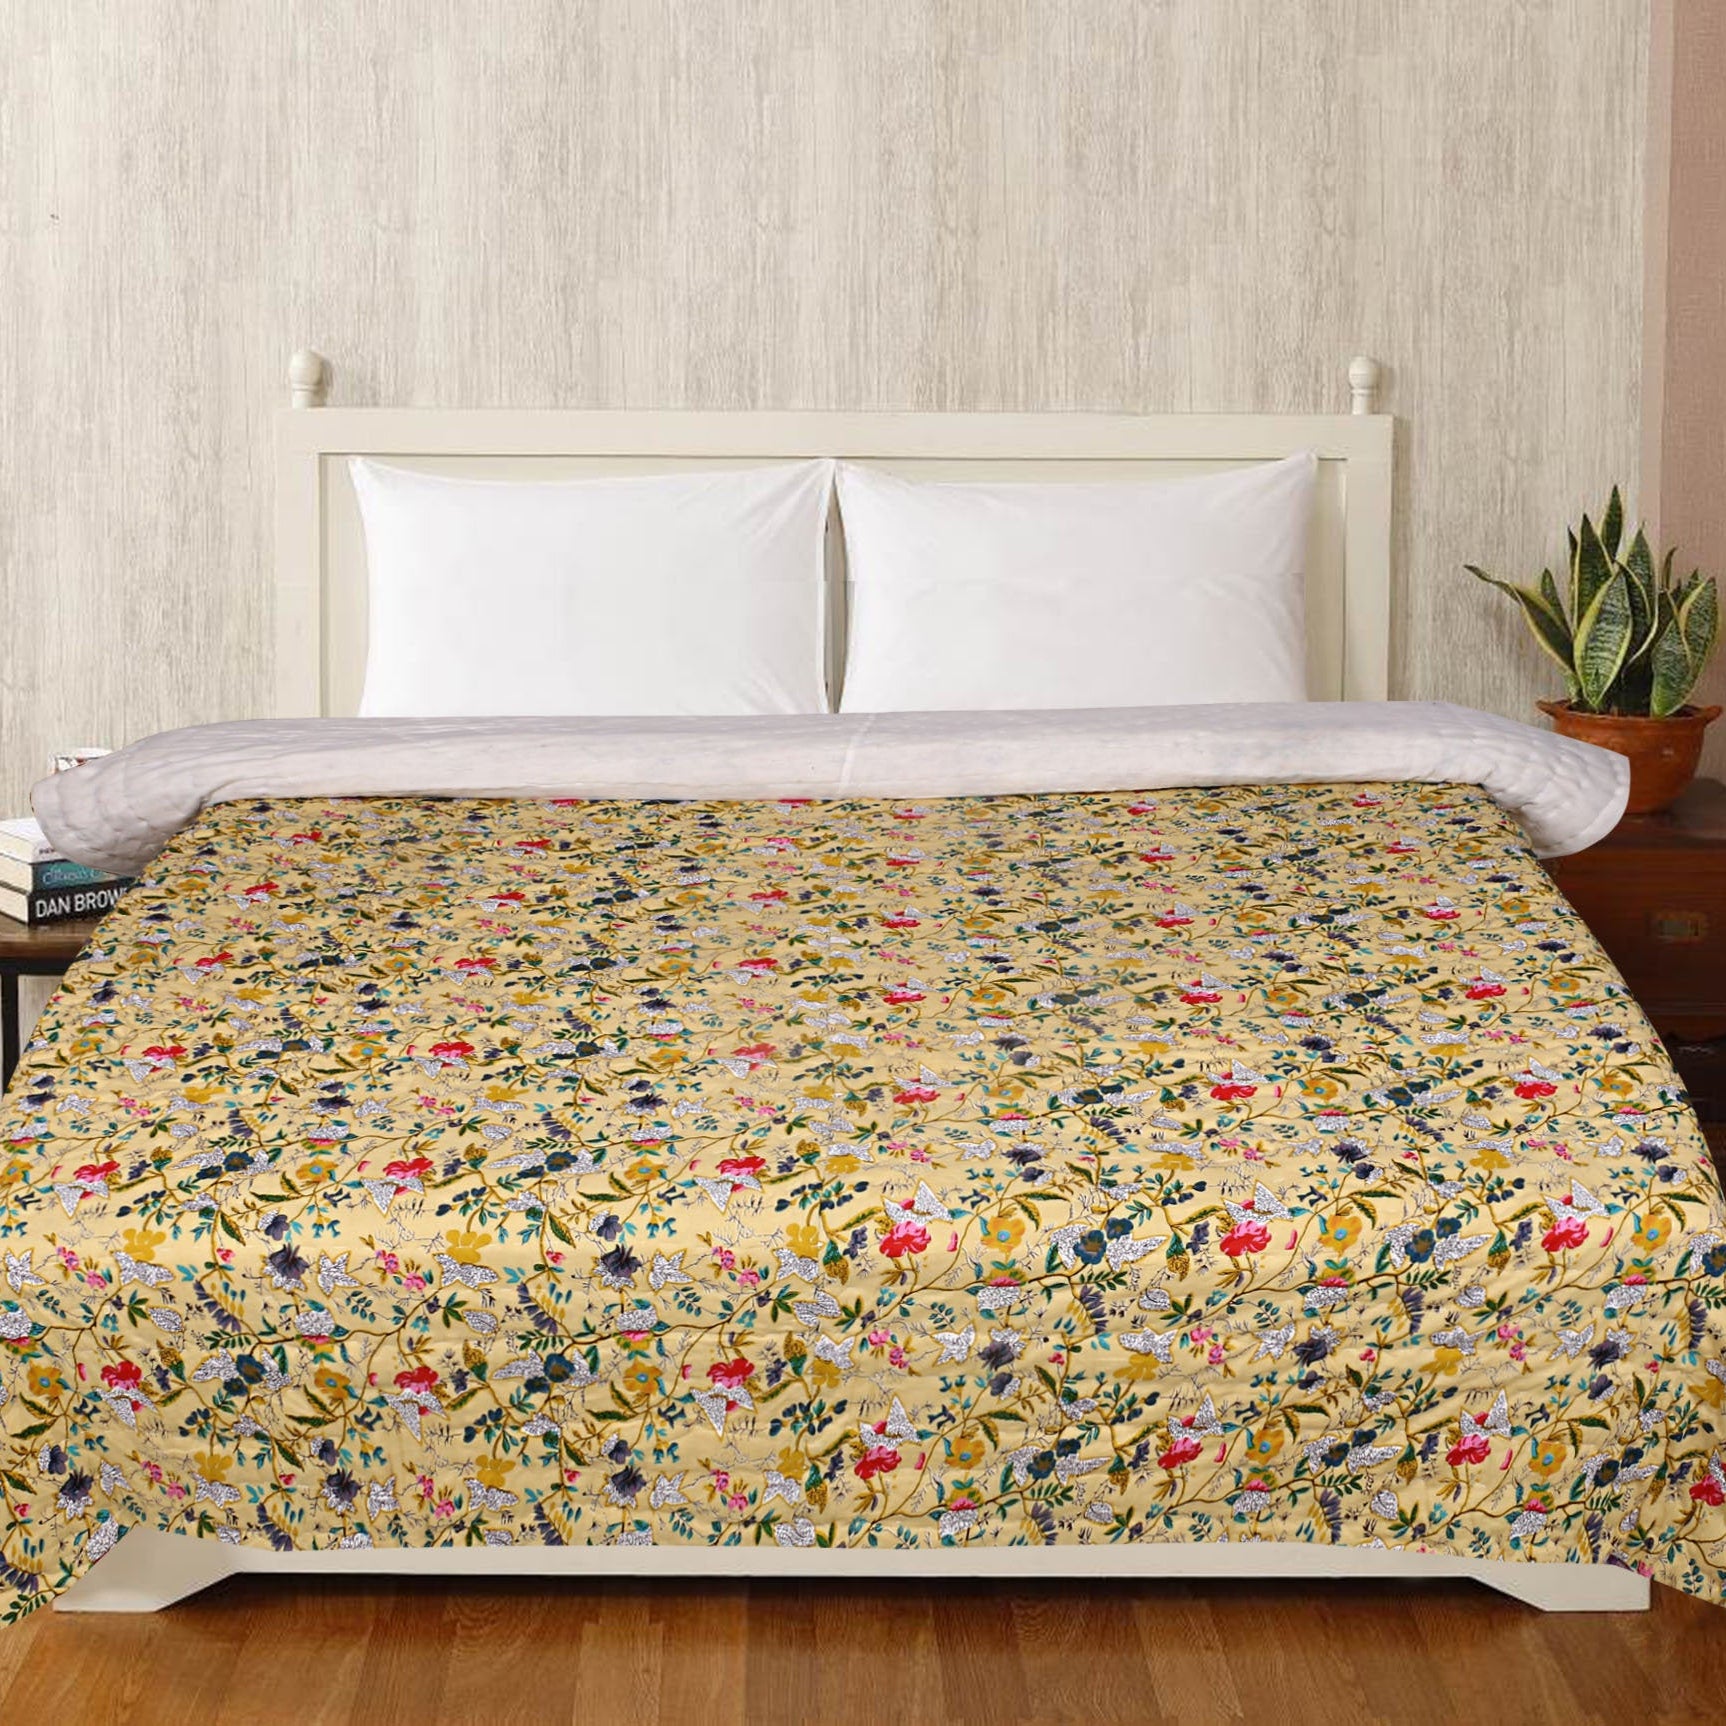 Linen Connections Cotton Kantha Quilt Blanket Throw Bed Spread Rajai Doona Quilt Cover King Quilt Queen Quilt Doona Blanket